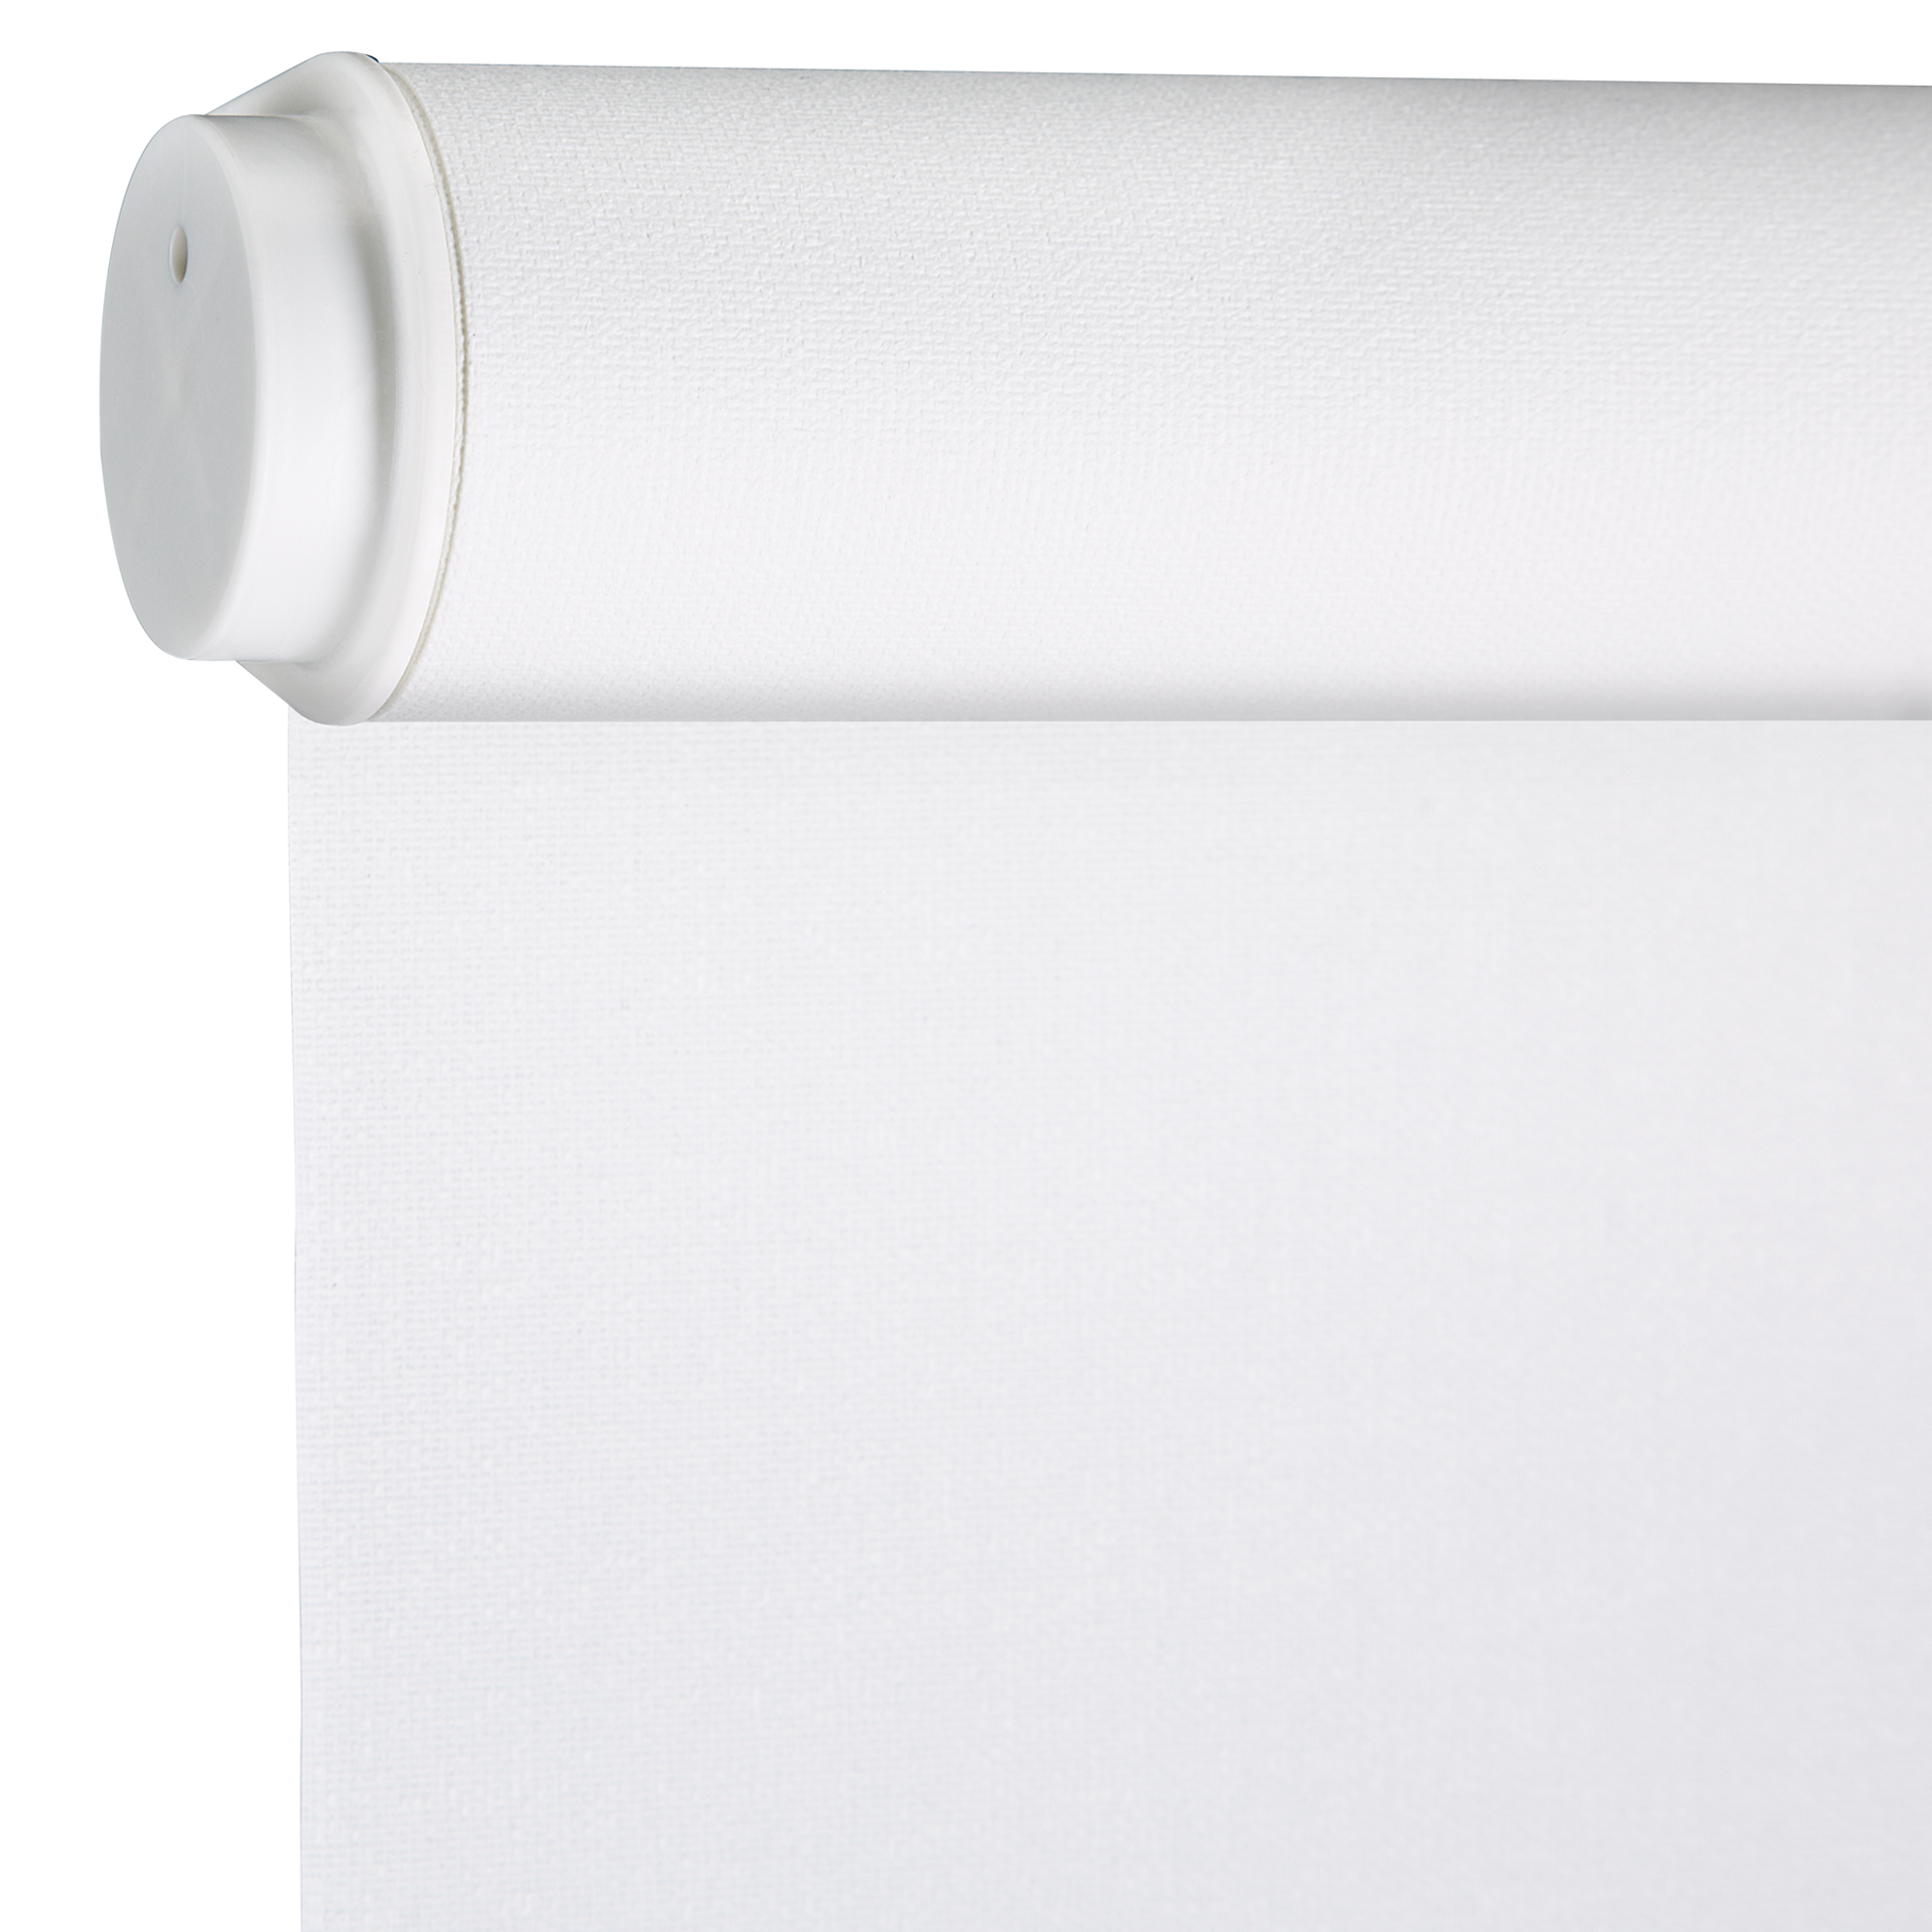 Seitenzug-Rollo 'Lichtdurchlässig' weiß 142 x 180 cm + product picture